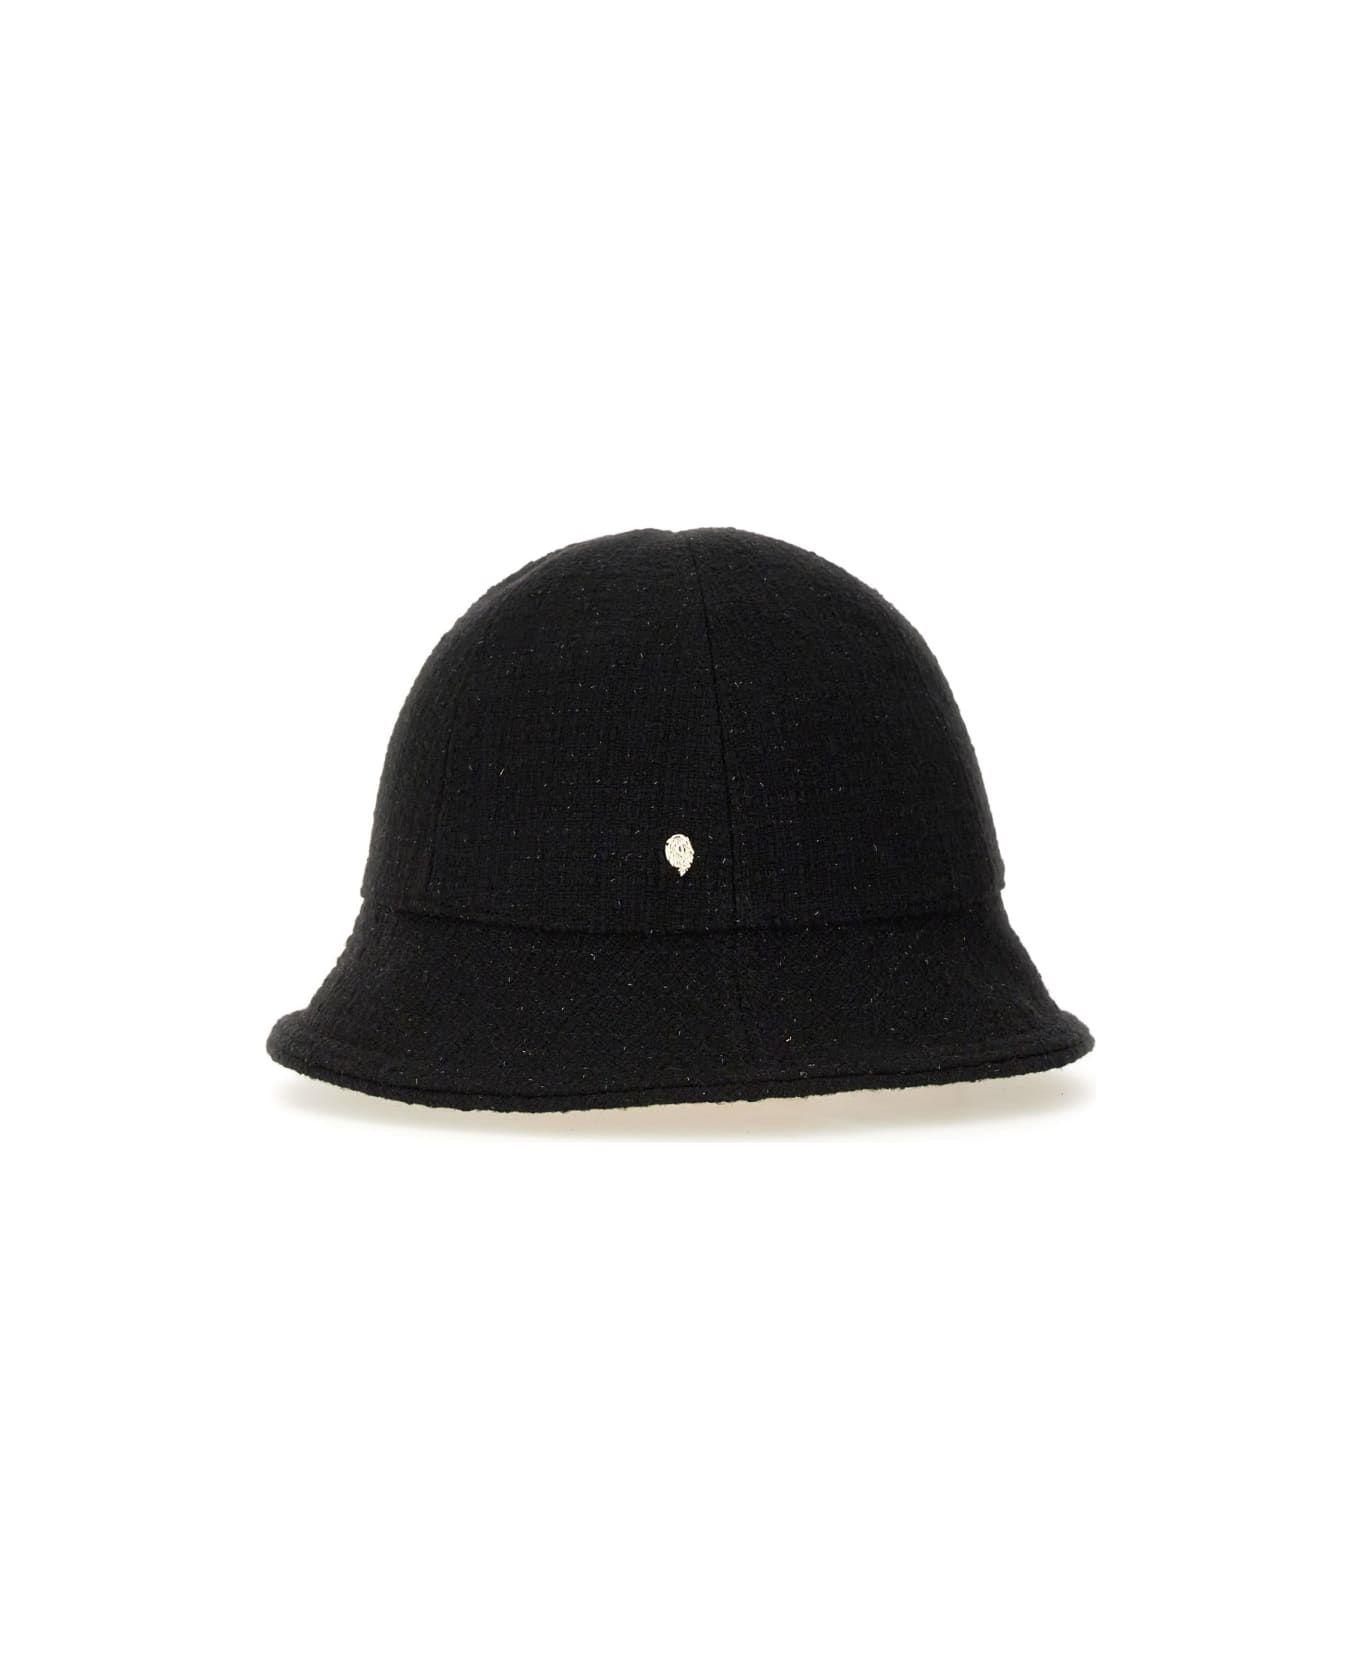 Helen Kaminski Hat "carmen" - BLACK 帽子